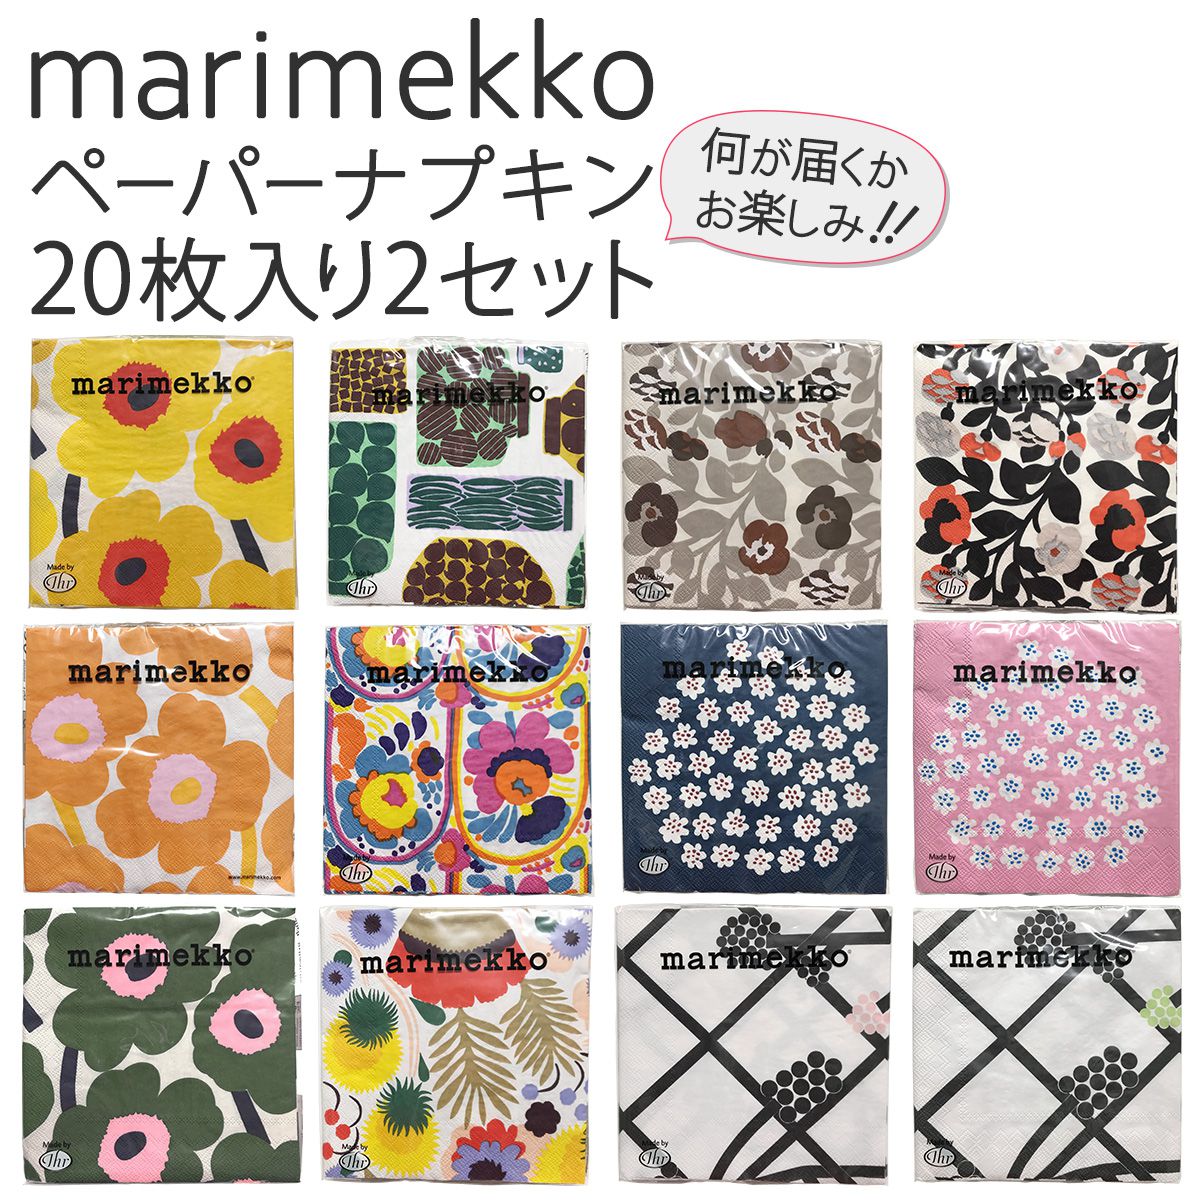 マリメッコ Marimekko ペーパーナプキン 紙ナプキン 2セット 全12柄